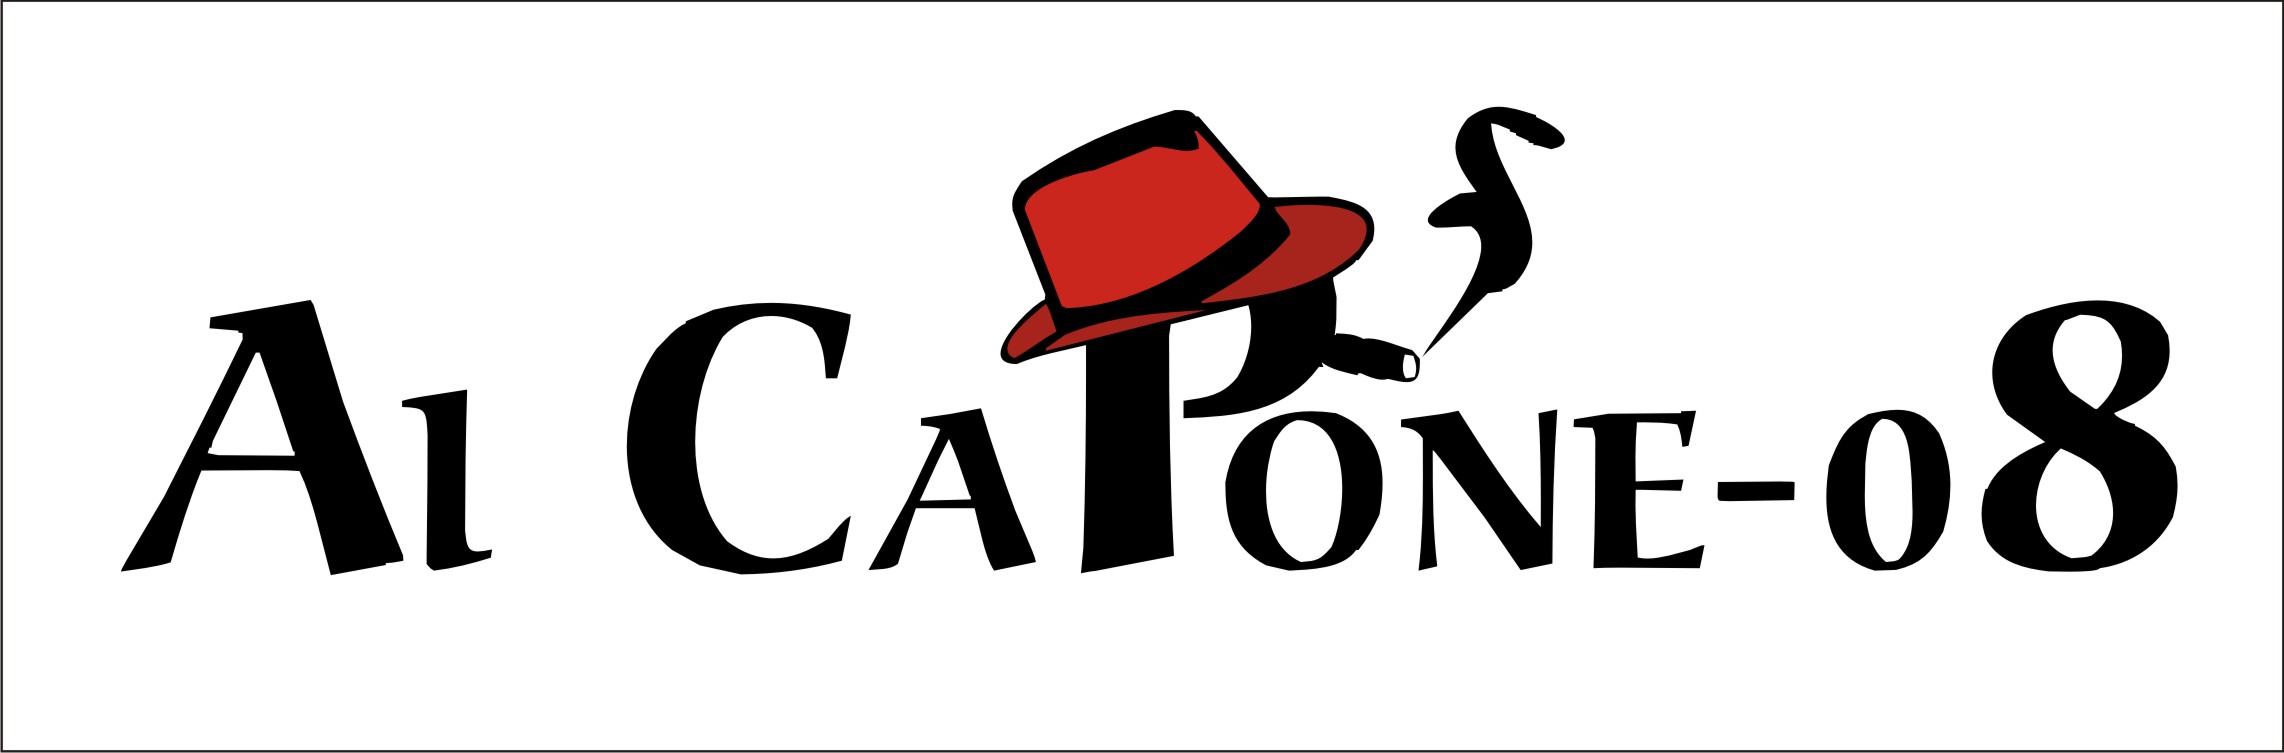 Al Capone-08